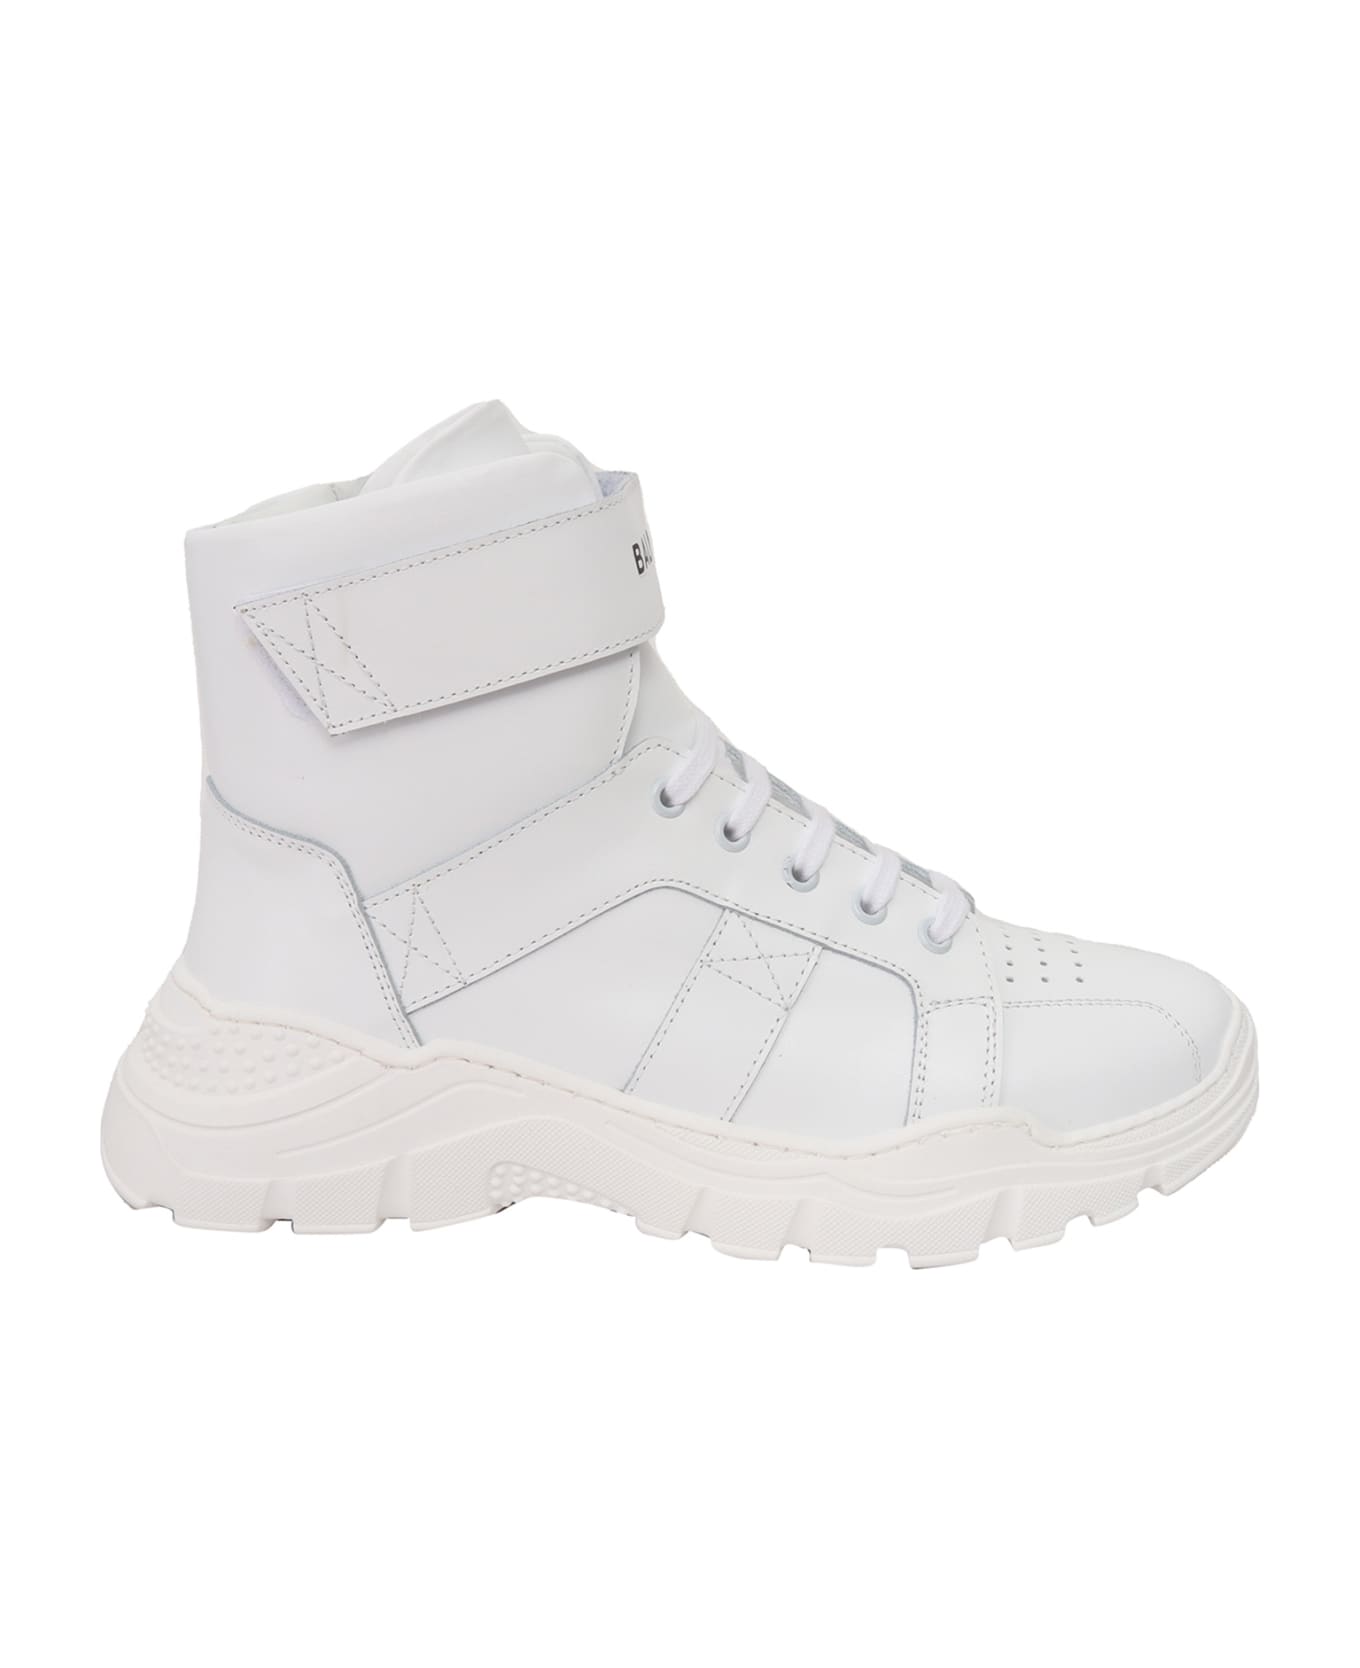 Balmain High Top Sneakers - WHITE